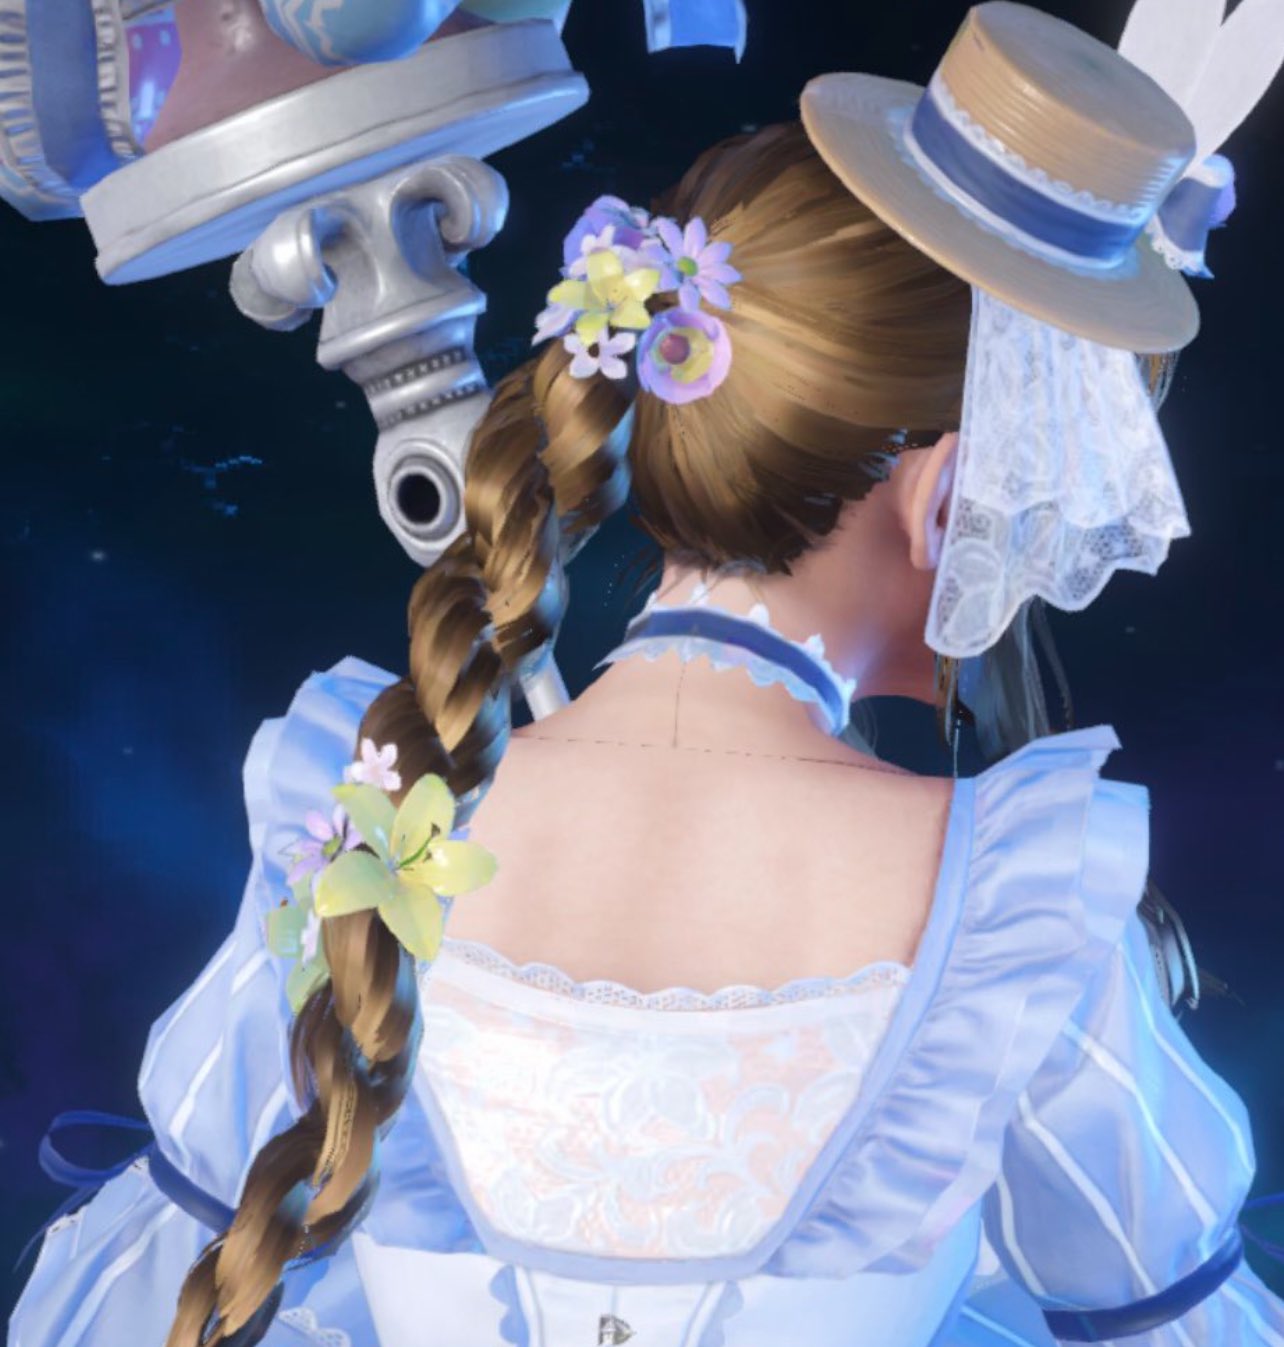 藍白禮服十分誘人《最終幻想7EC》愛麗絲復活節服裝公布